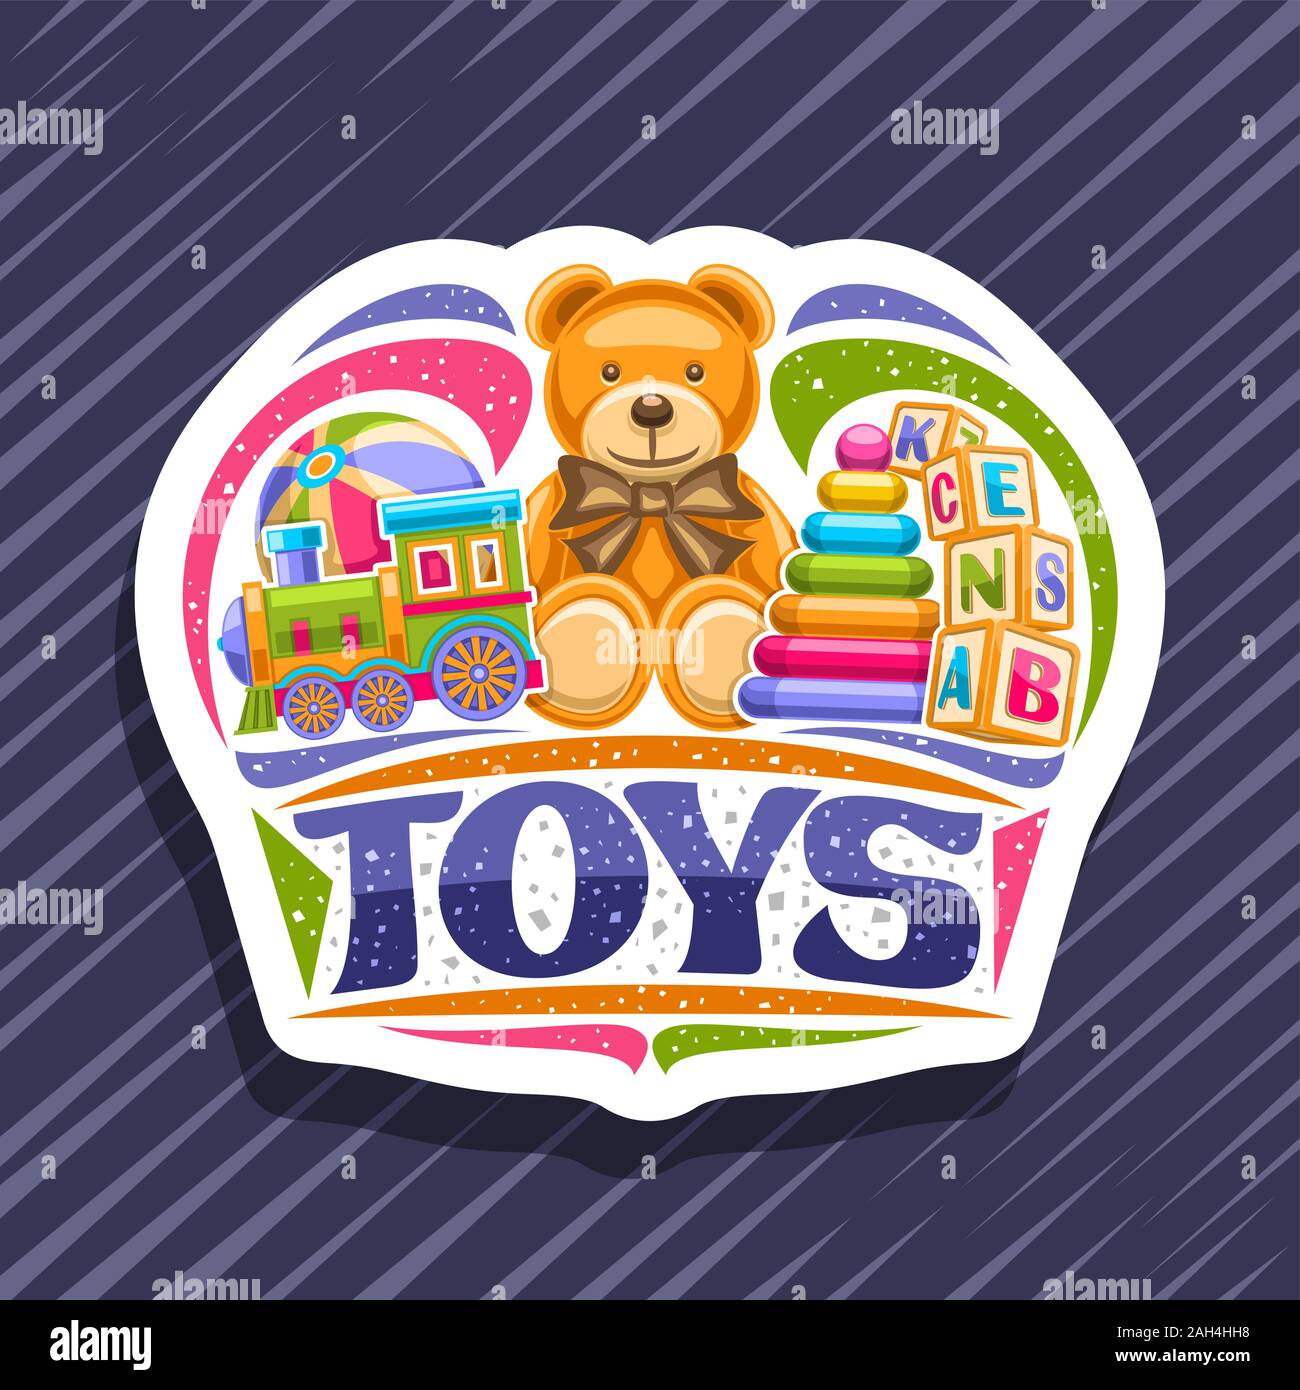 Logo Vector Pour Les Enfants Jouets, couper le papier décoratif autocollant avec illustration de train à vapeur, ballon gonflable, des ours en peluche, pyramide en plastique, ki Illustration de Vecteur